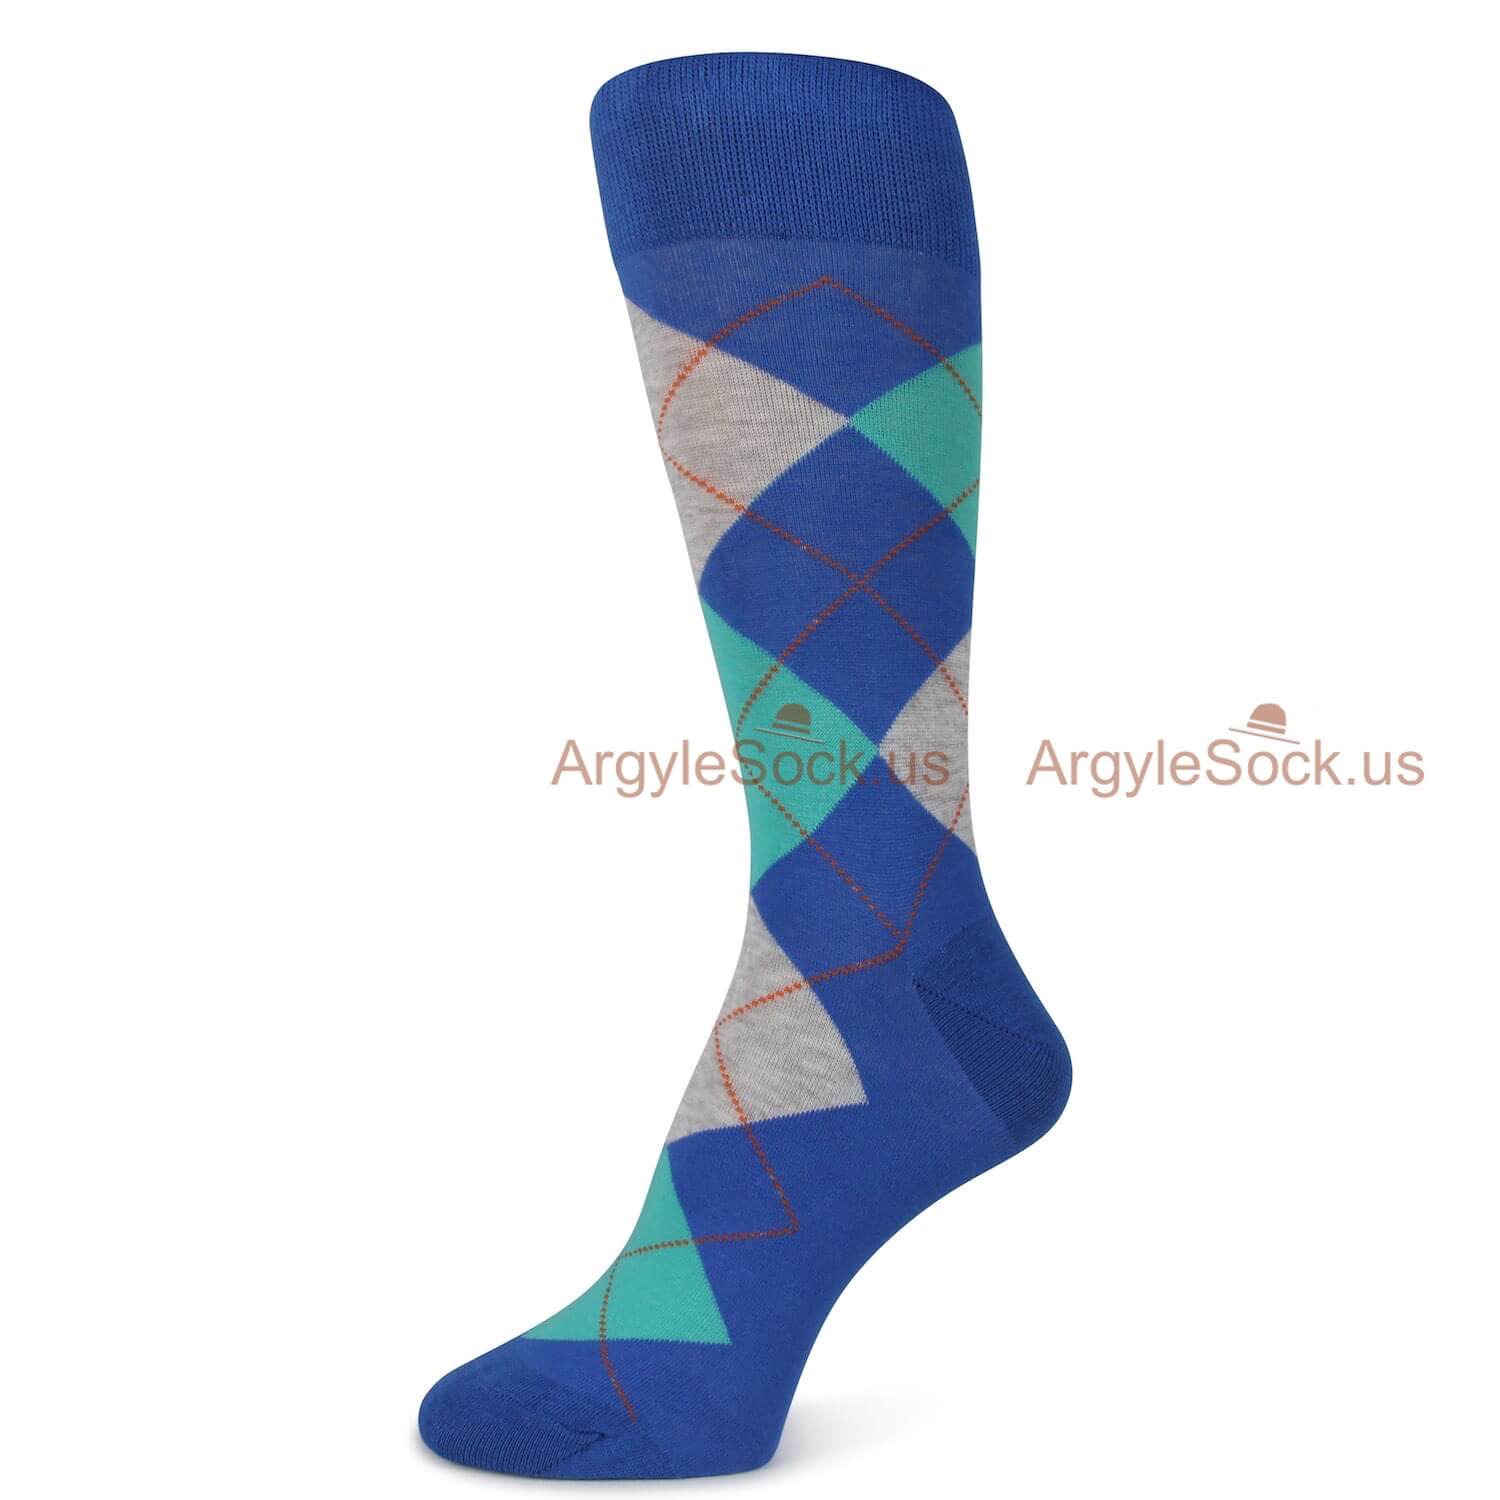 Blue Aqua and Gray Argyle Socks For Men